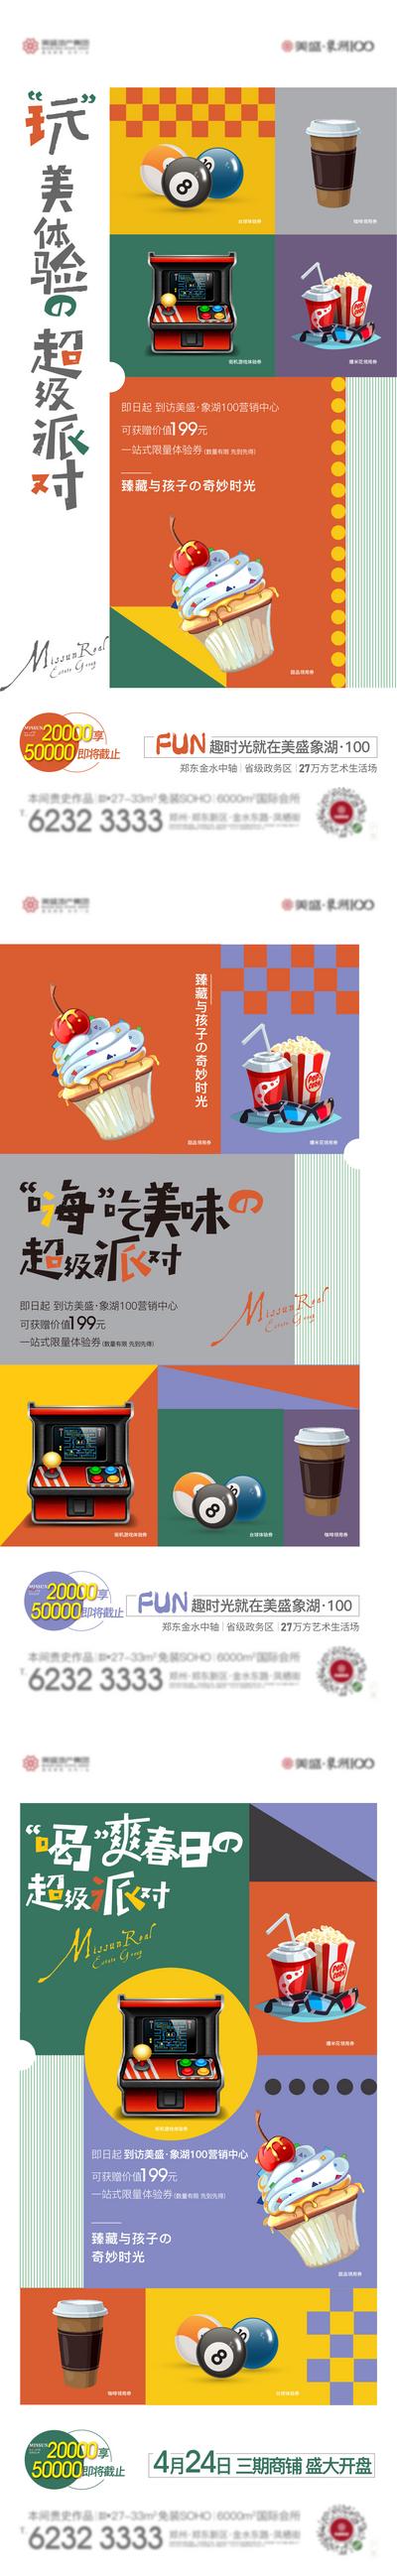 南门网 海报 房地产 甜品 爆米花 游戏机 台球